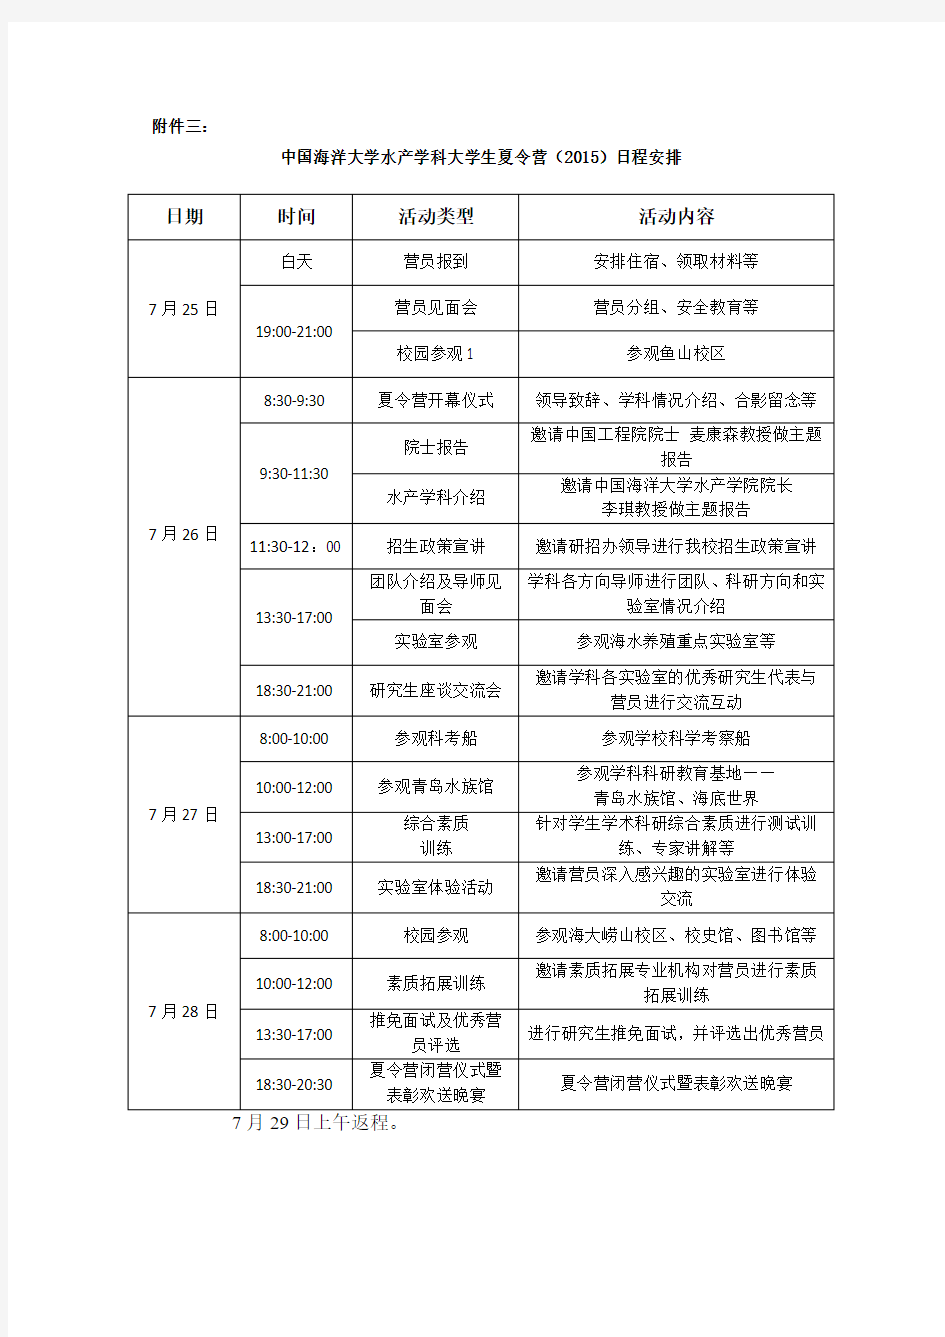 中国海洋大学水产学科大学生夏令营(2015)日程安排